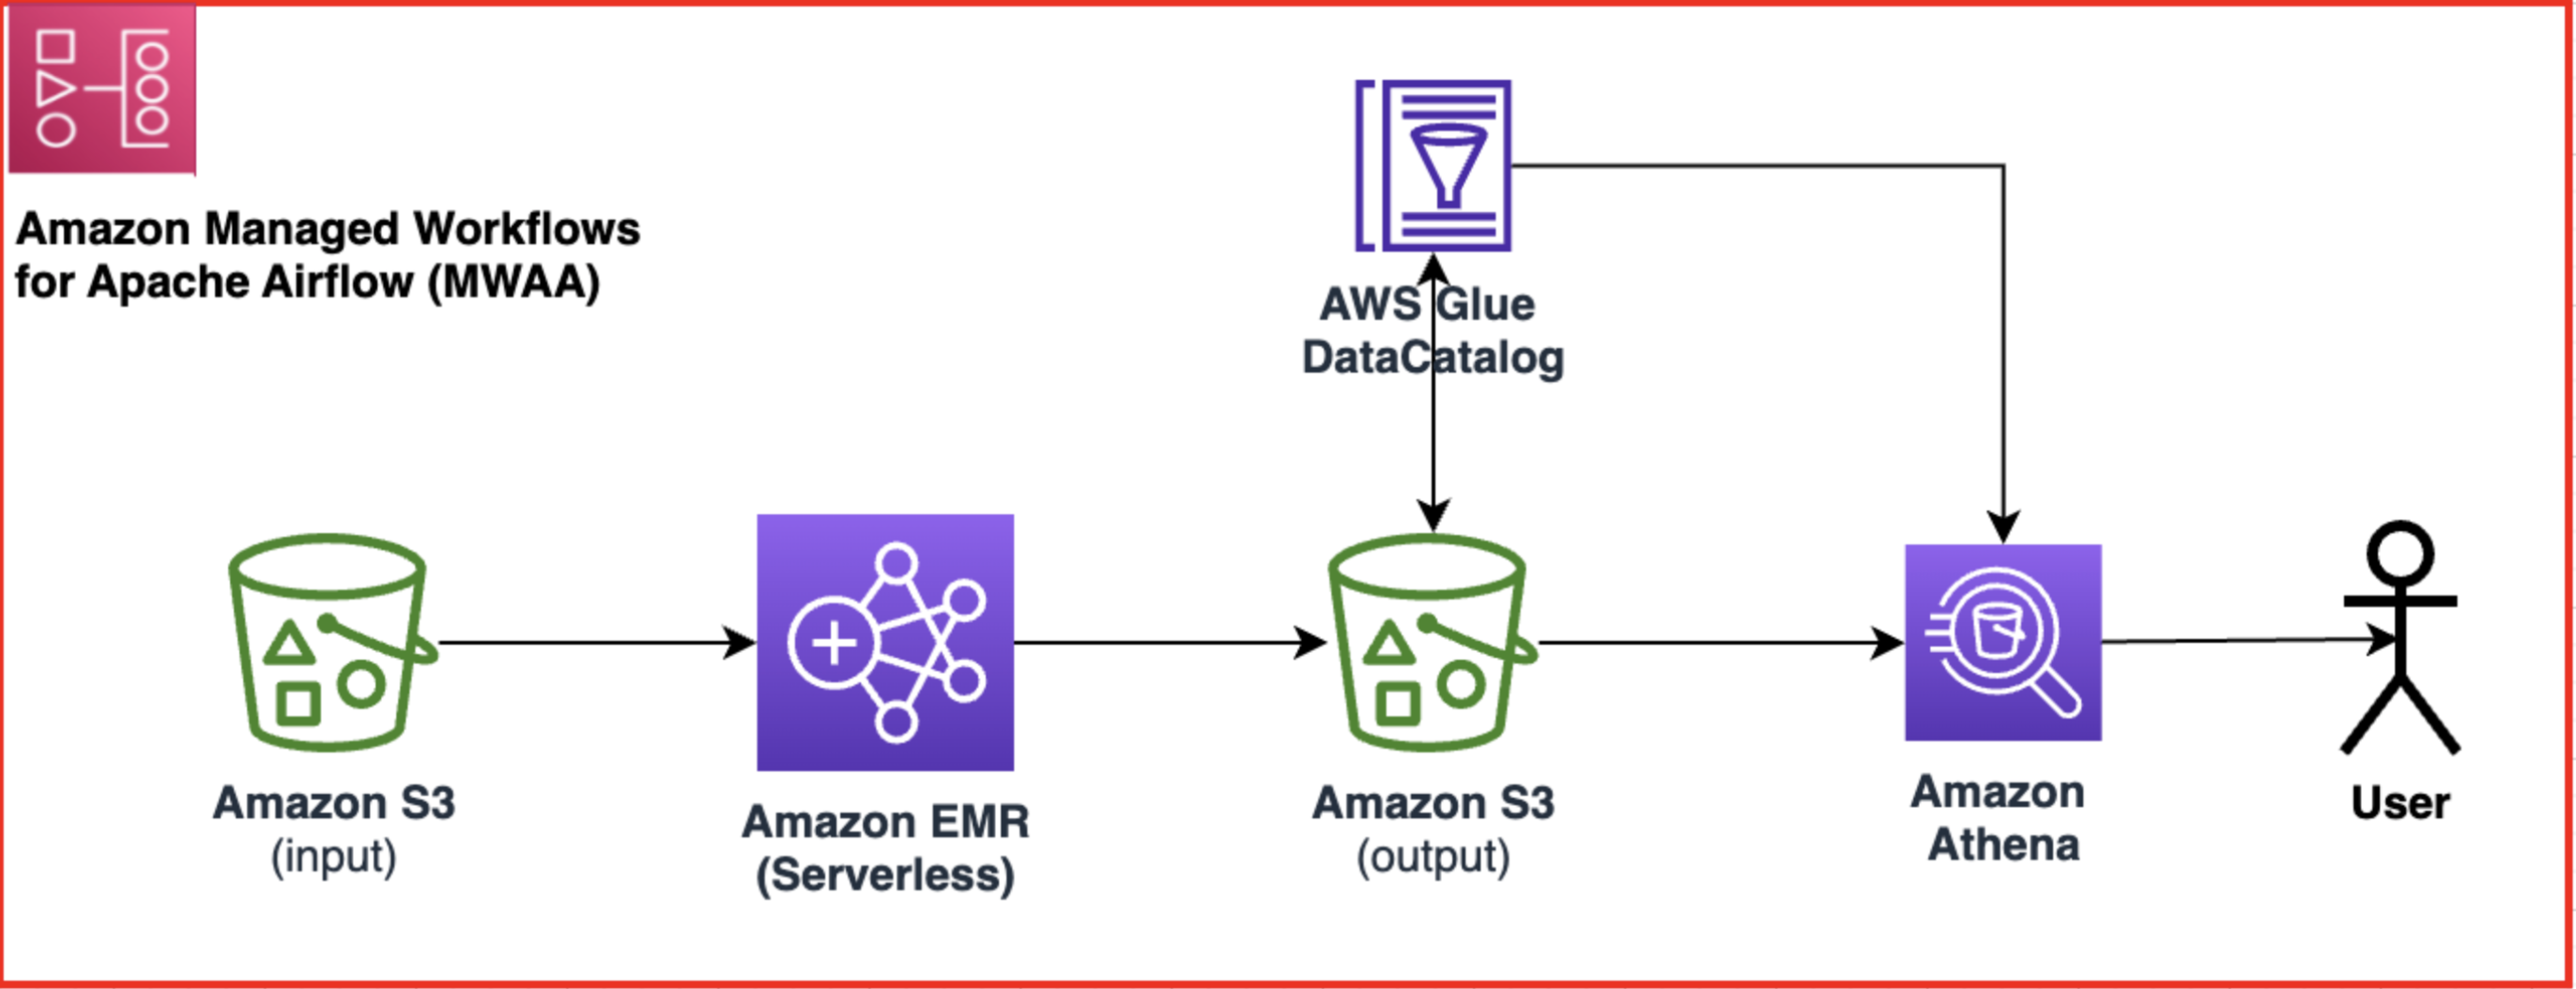 Ενορχηστρώστε εργασίες Spark χωρίς διακομιστή Amazon EMR με το Amazon MWAA και επικύρωση δεδομένων χρησιμοποιώντας το Amazon Athena | Υπηρεσίες Ιστού της Amazon